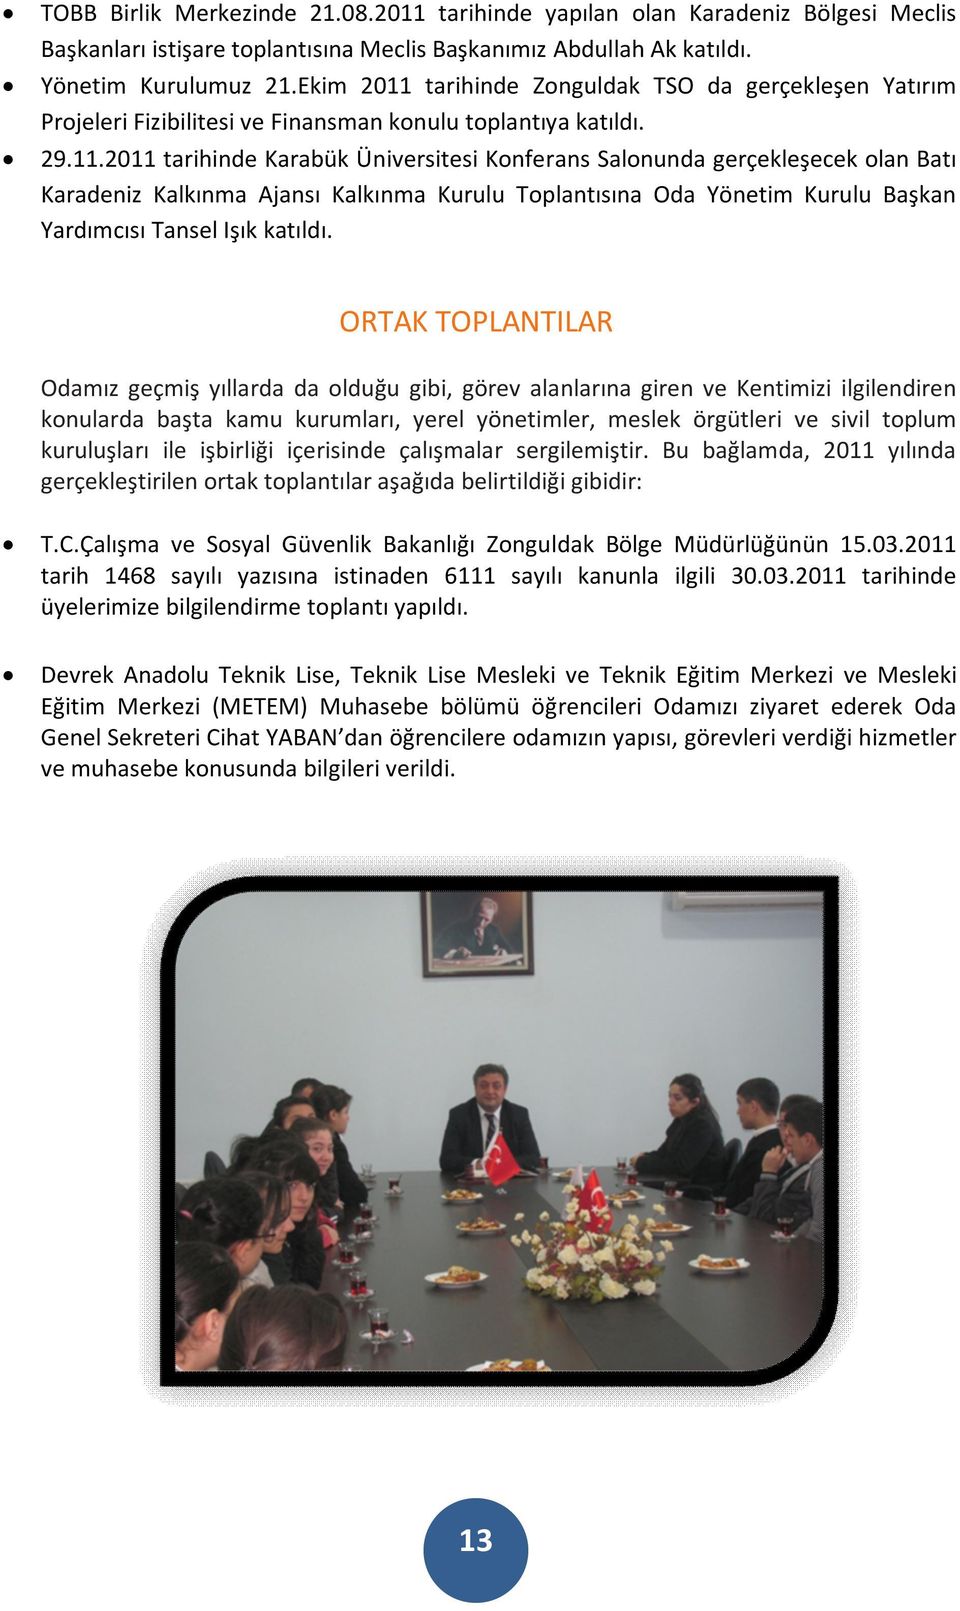 tarihinde Zonguldak TSO da gerçekleşen Yatırım Projeleri Fizibilitesi ve Finansman konulu toplantıya katıldı. 29.11.